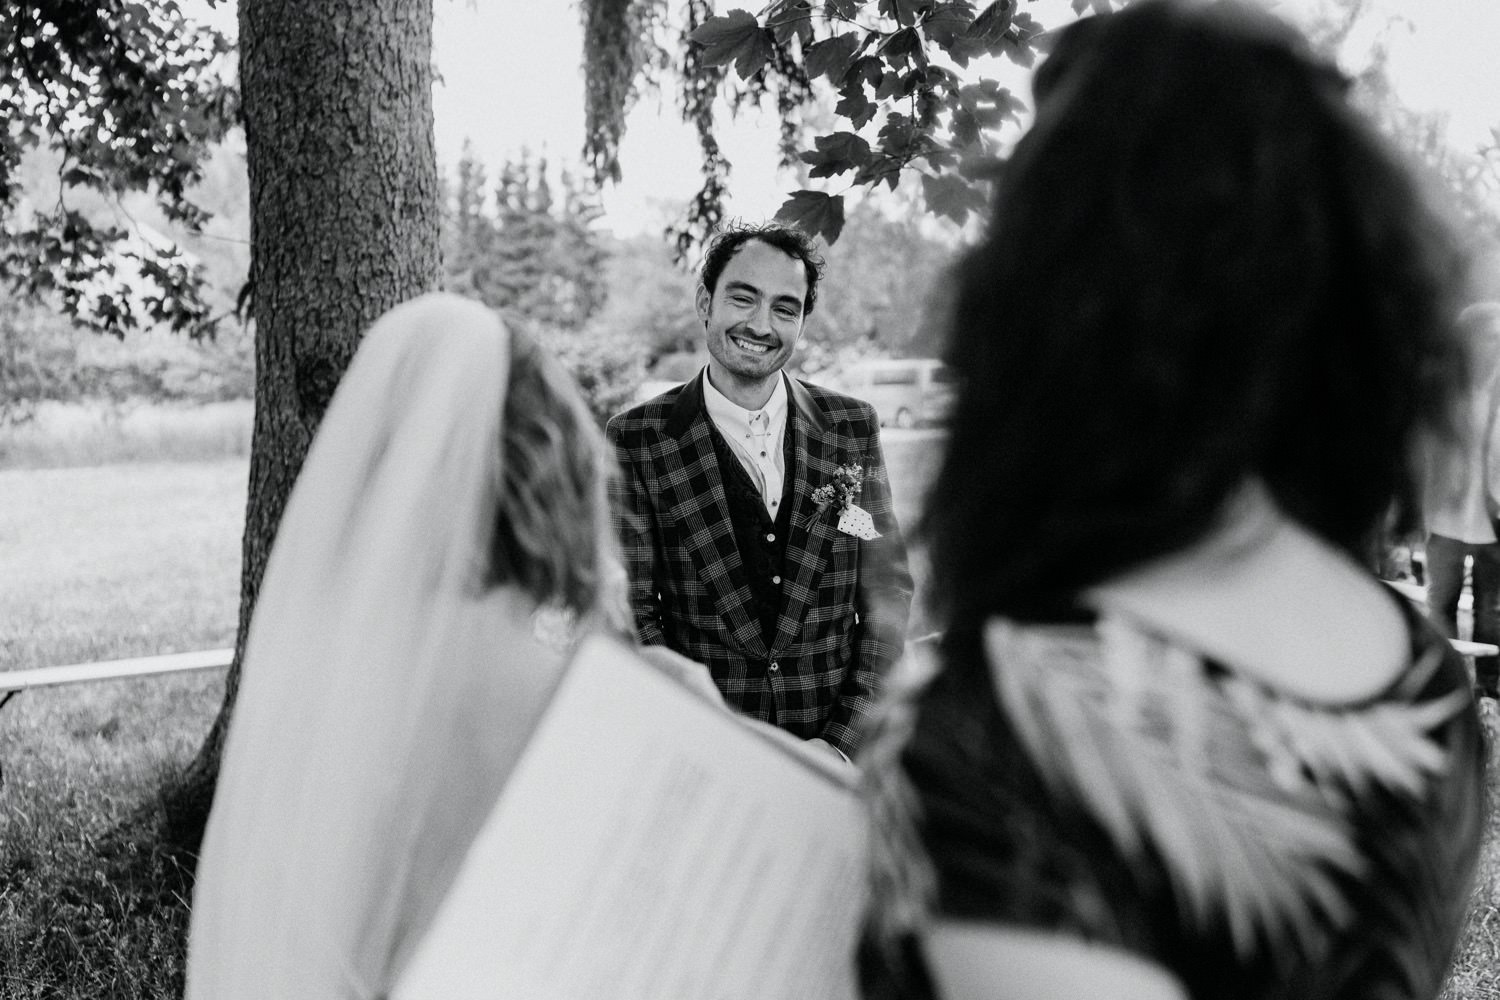 Der Bräutigam lacht vor Freude über das ganze Gesicht, als er dem Trauversprechen seiner Braut bei der weltlichen Trauzeremonie lauscht. In diesem herzerwärmenden Moment der Liebe und des Glücks wird sein Gesicht von einem breiten Lächeln erhellt, während er die aufrichtigen Worte seiner Braut mit Dankbarkeit und Freude aufnimmt.